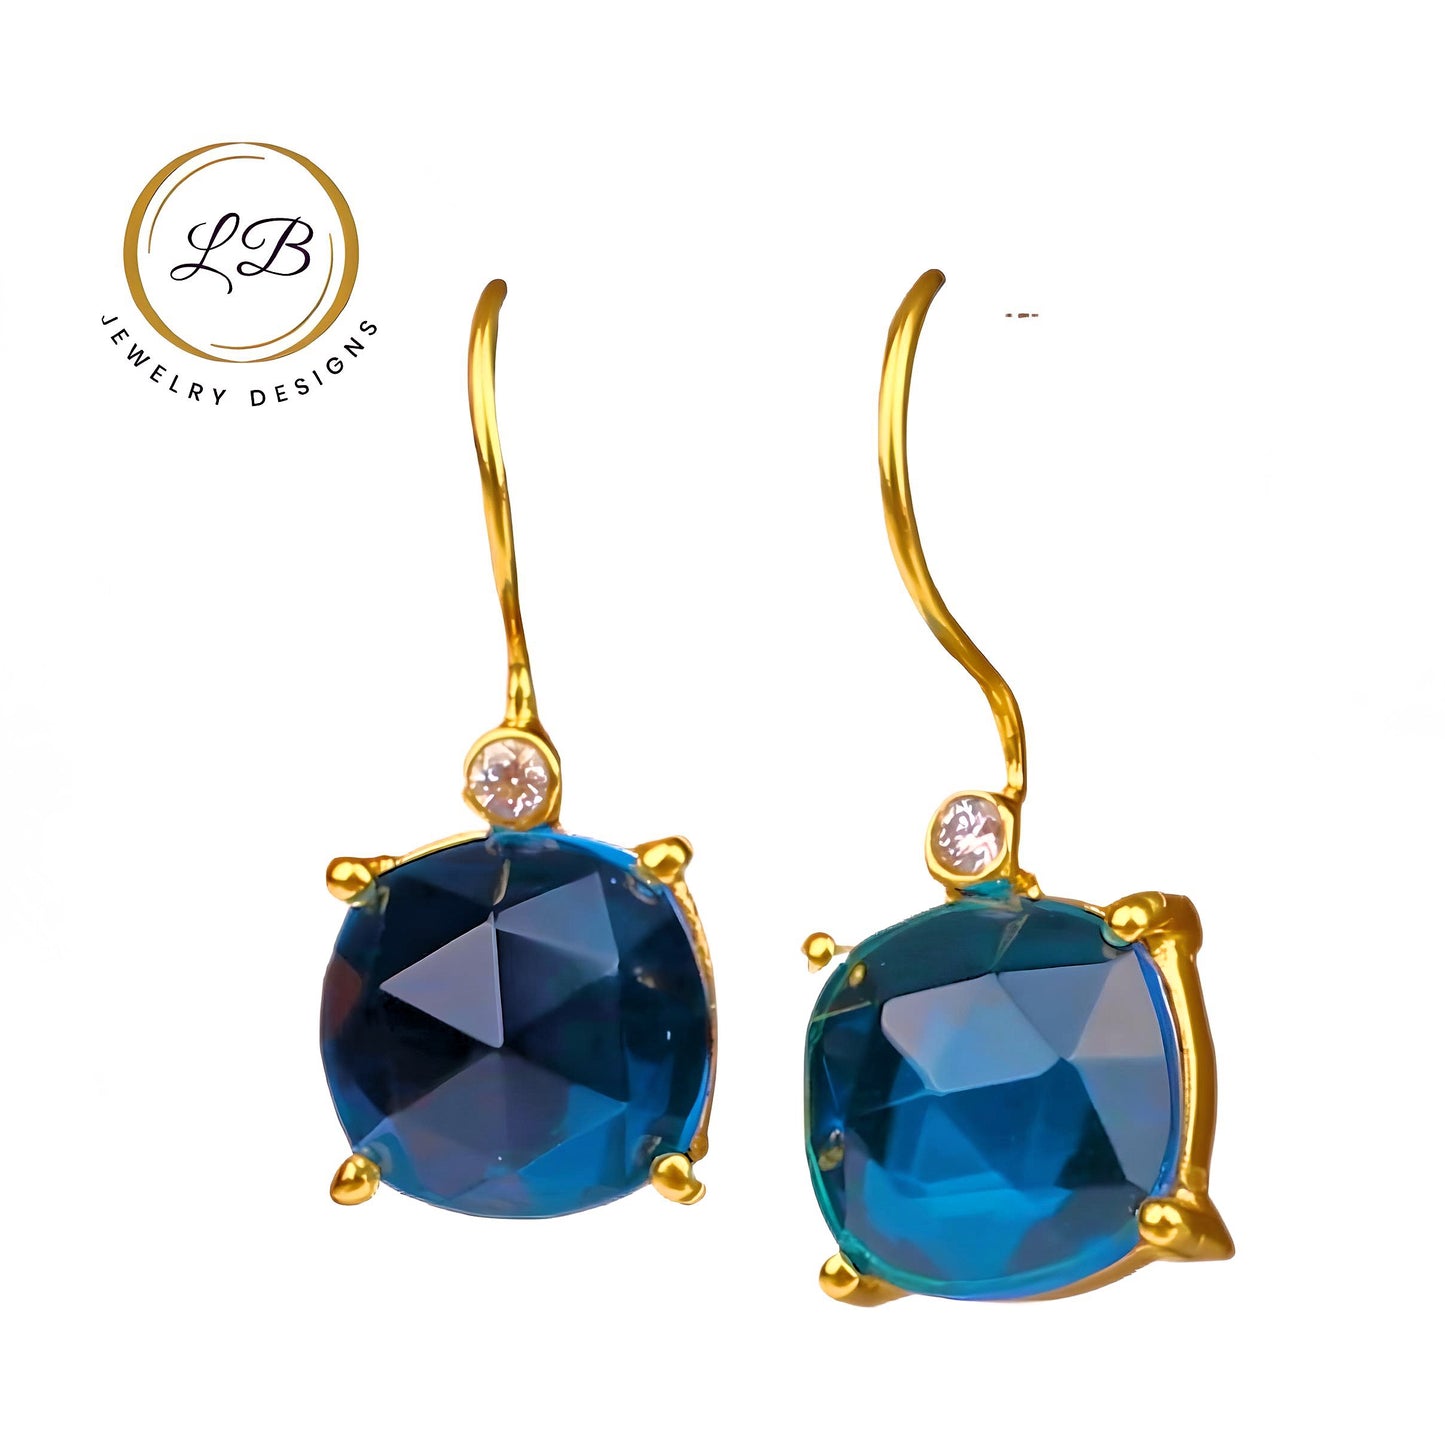 Swiss Blue Topaz Gold Dangle Earrings 1.5”